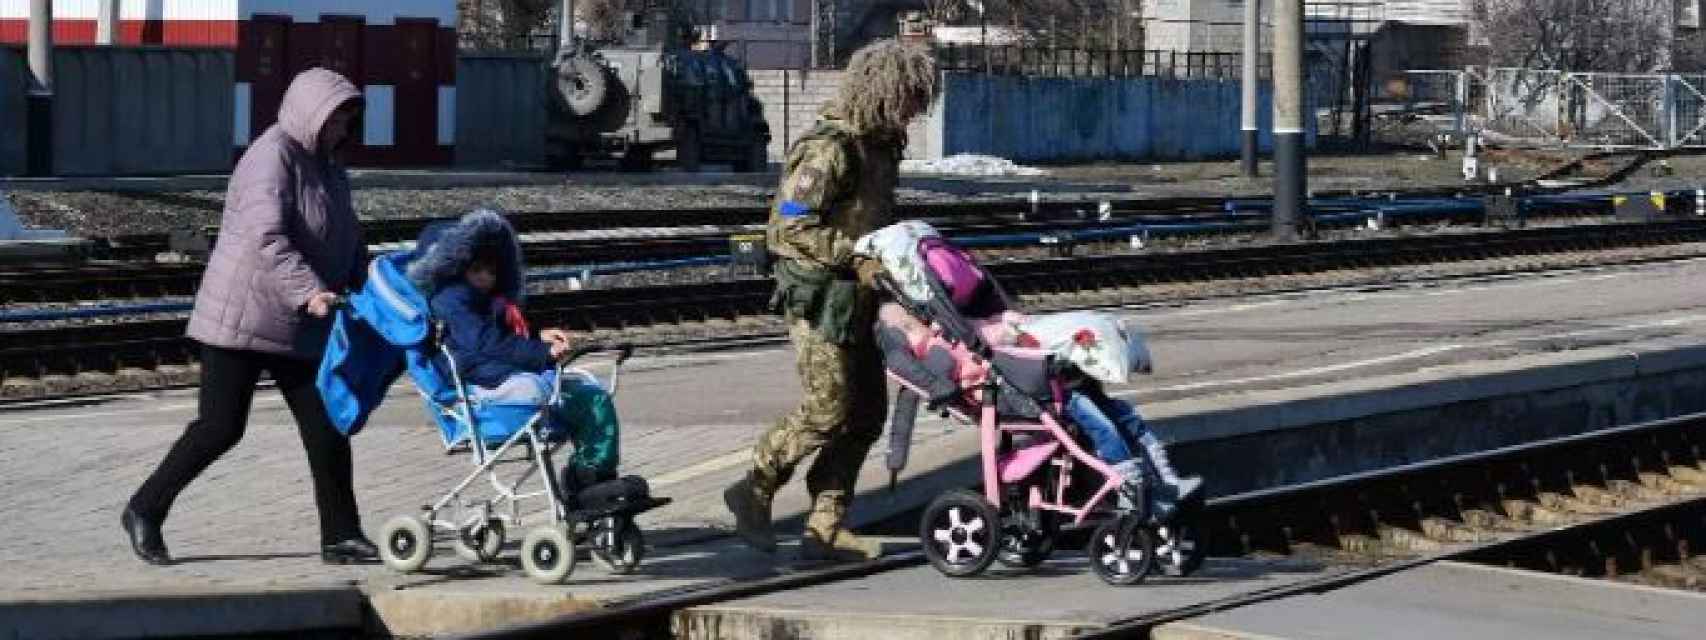 Una mujer y un militar son vistos ayudando a varios niños a subirse a un tren.